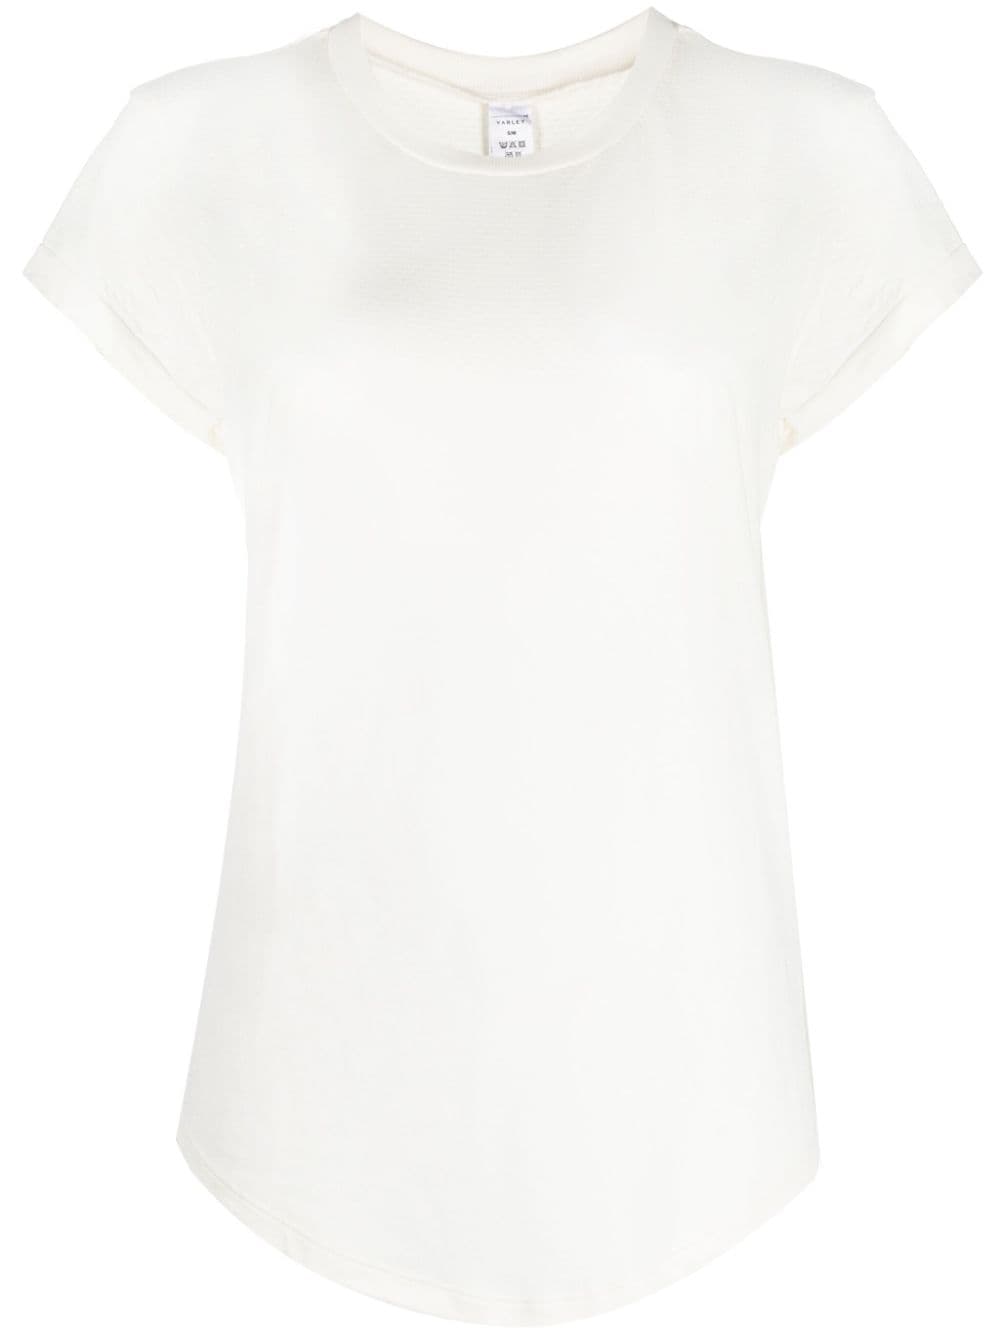 Varley short sleeve T-shirt - White